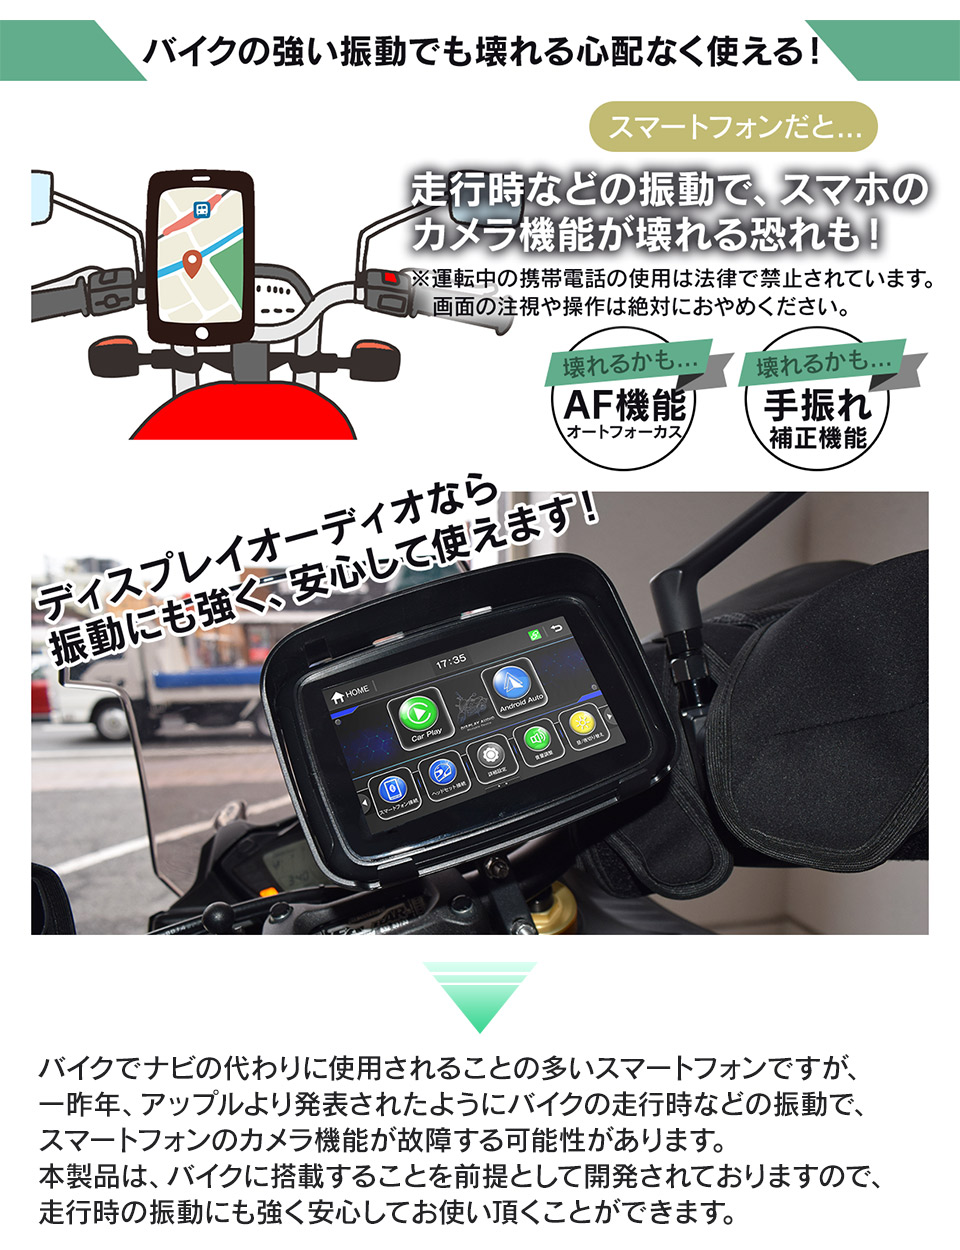 バイク用 ディスプレイオーディオ 5インチ 防水 ワイヤレス iphone CarPlay AndroidAuto SPDA-05B 無線 カープレイ